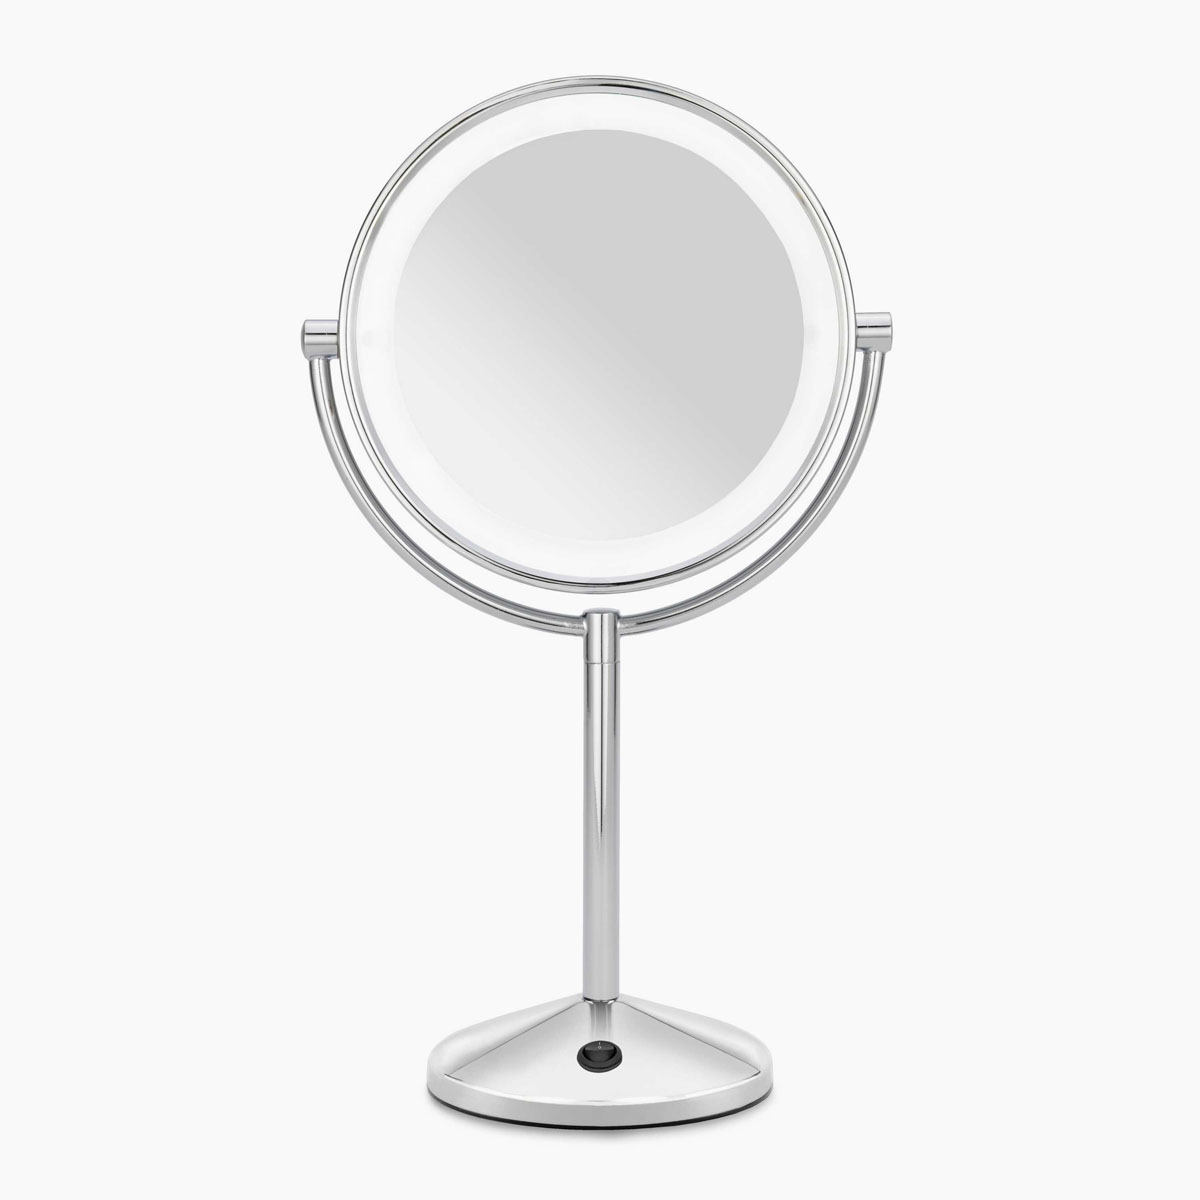 Consigue aquí el espejo de maquillaje más vendido de